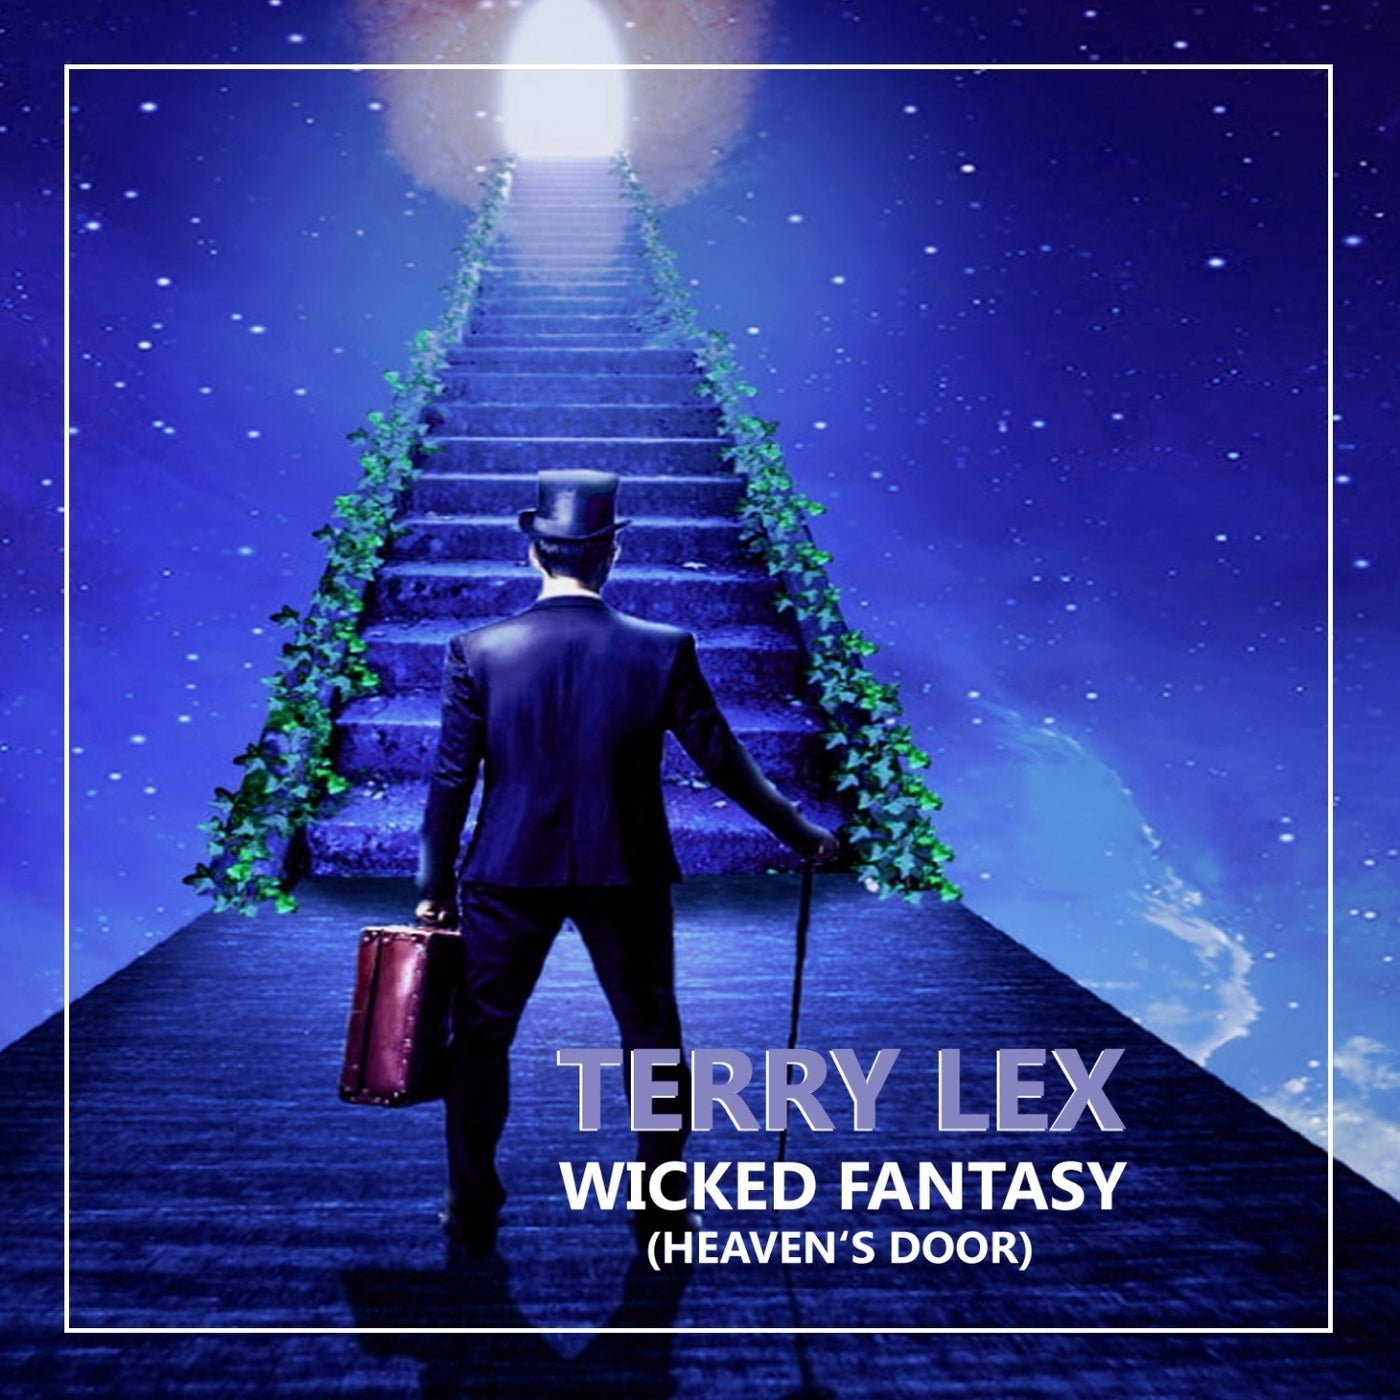 Wicked Fantasy (Heaven's Door) by Terry Lex on Beatport.